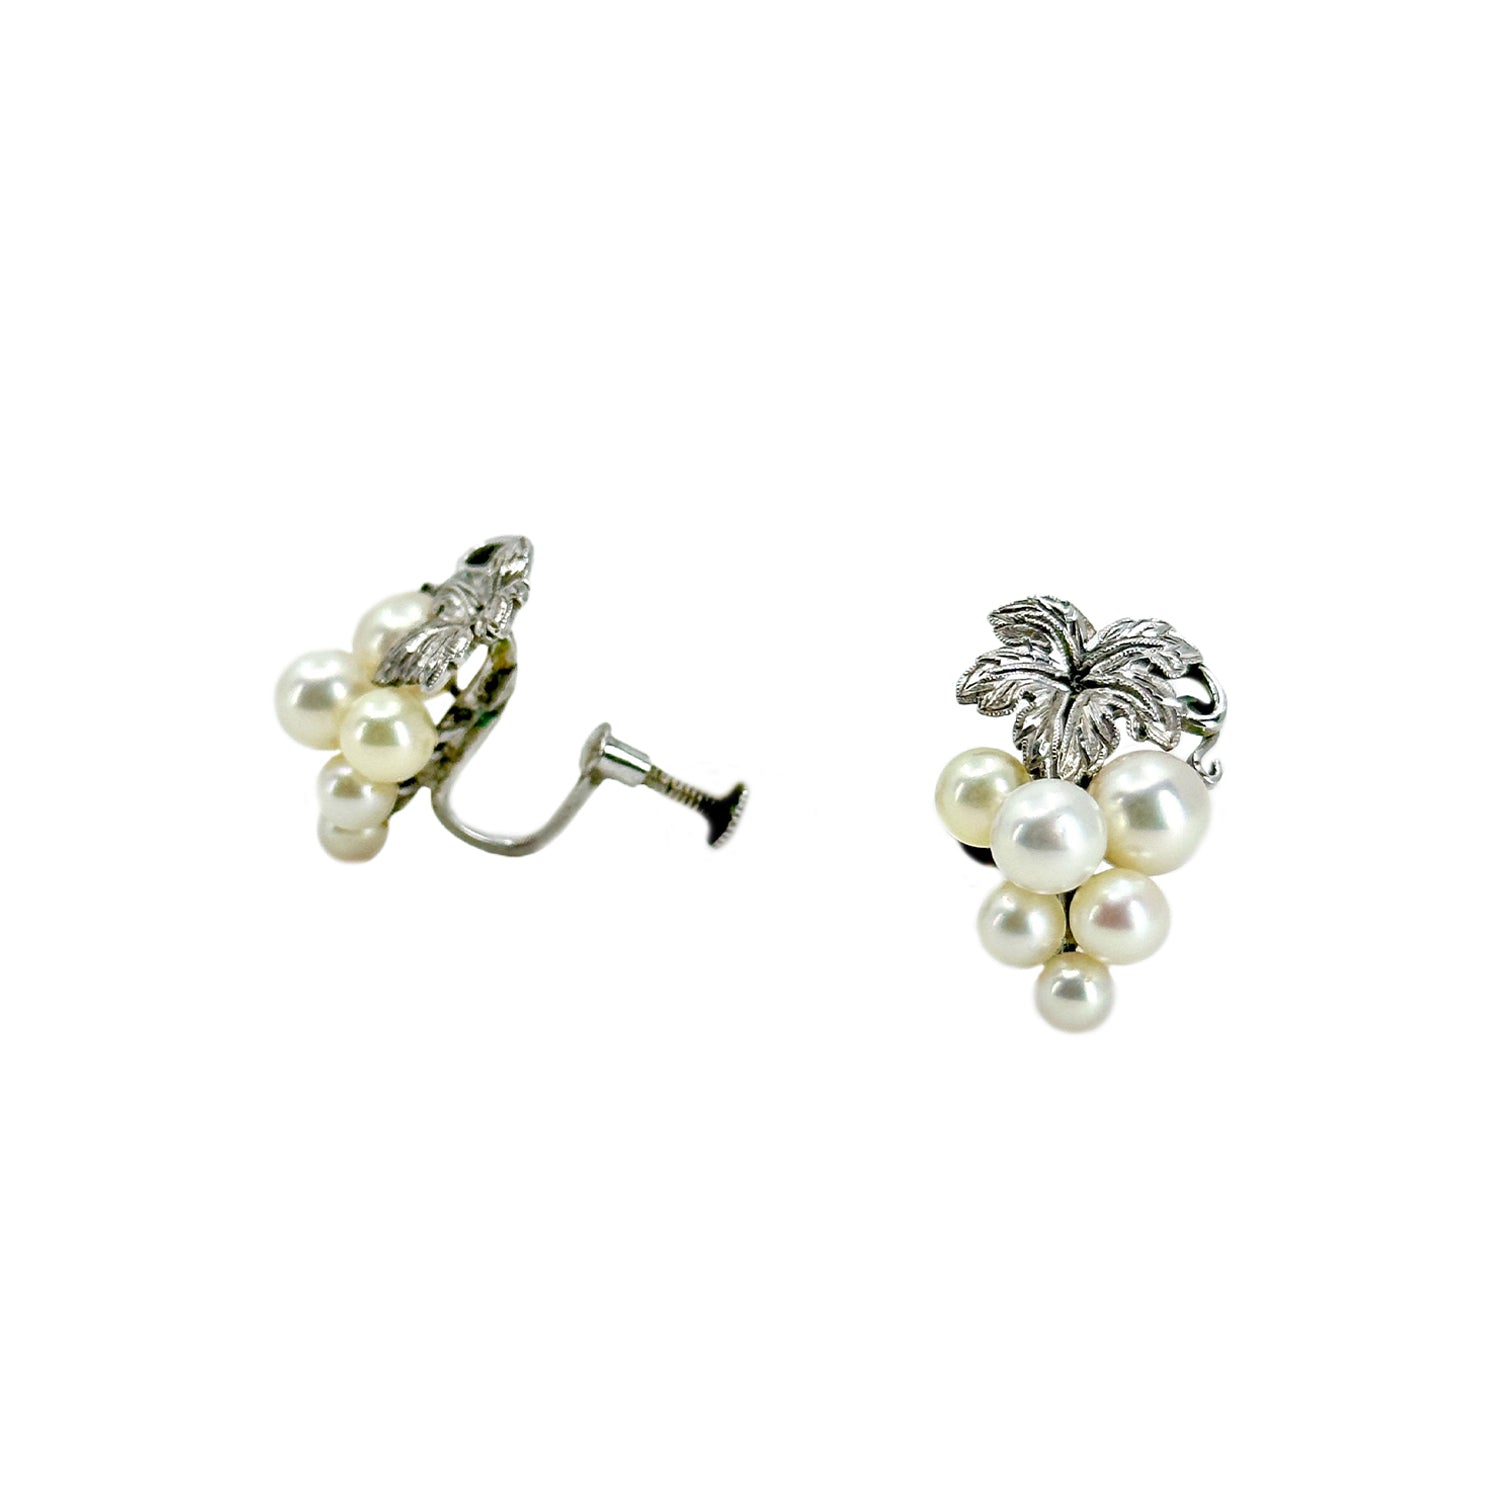 Cluster Vintage Grape Akoya Saltwater Cultured Pearl Screwback Earrings- Sterling Silver